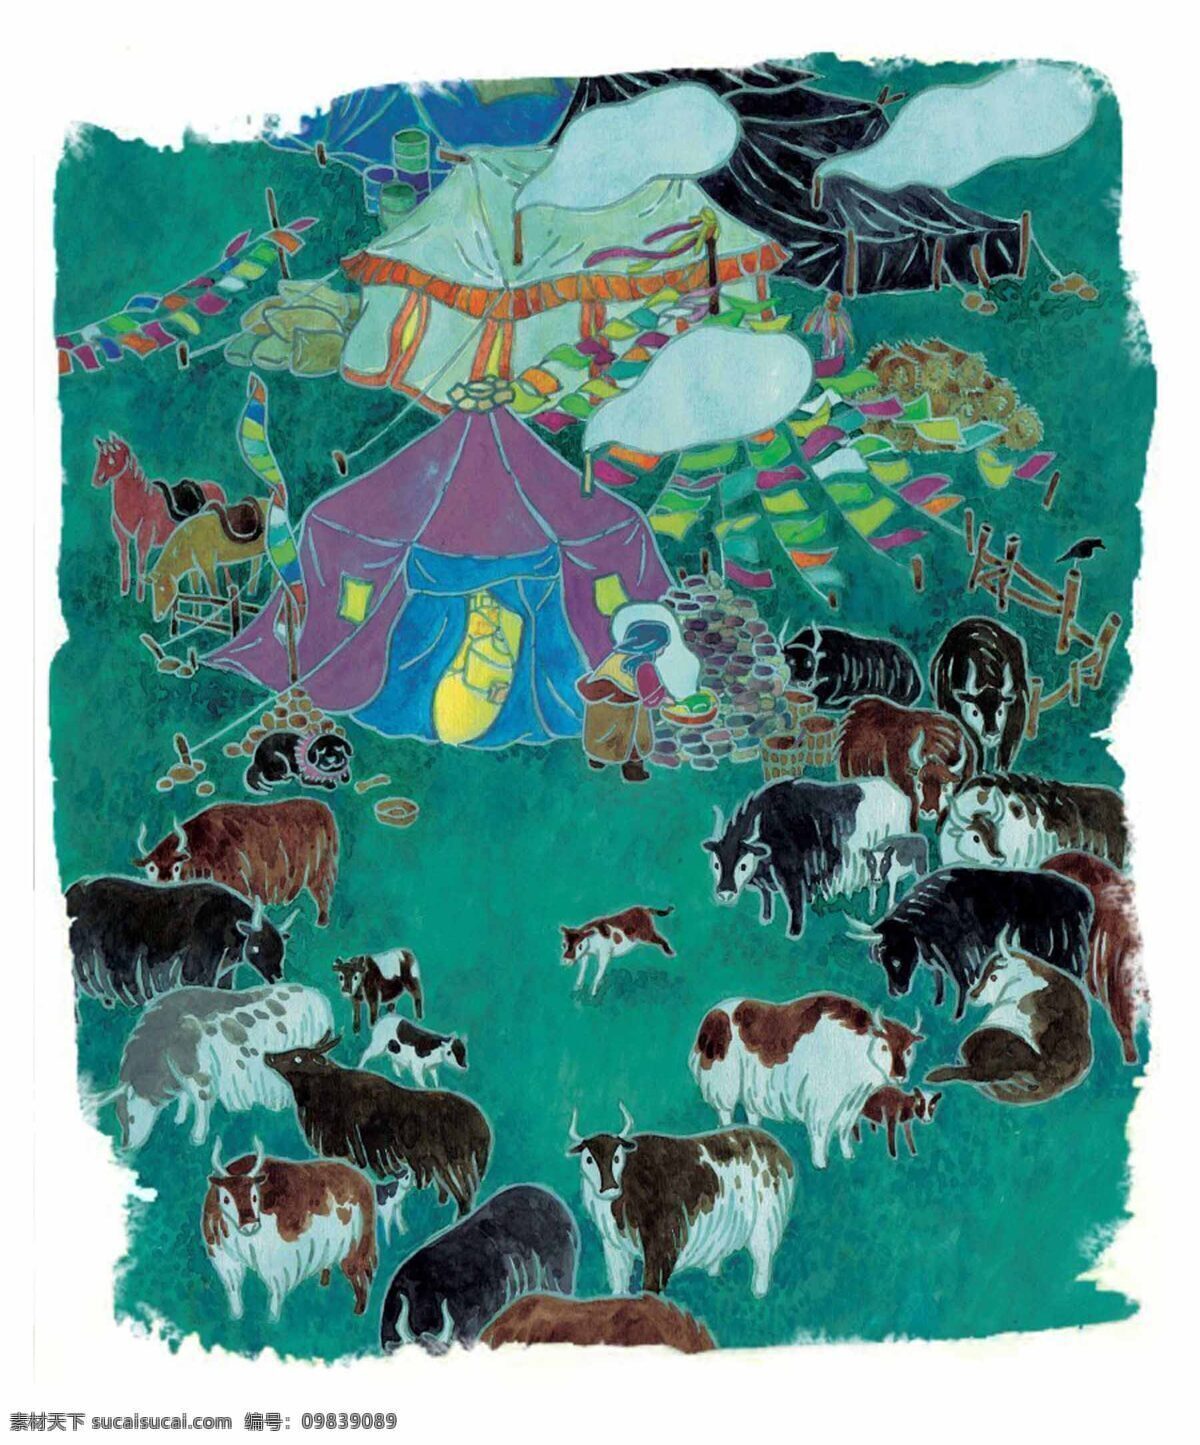 手绘 内蒙古 包 动物 水彩画 手绘内蒙古包 内蒙古包 文化艺术